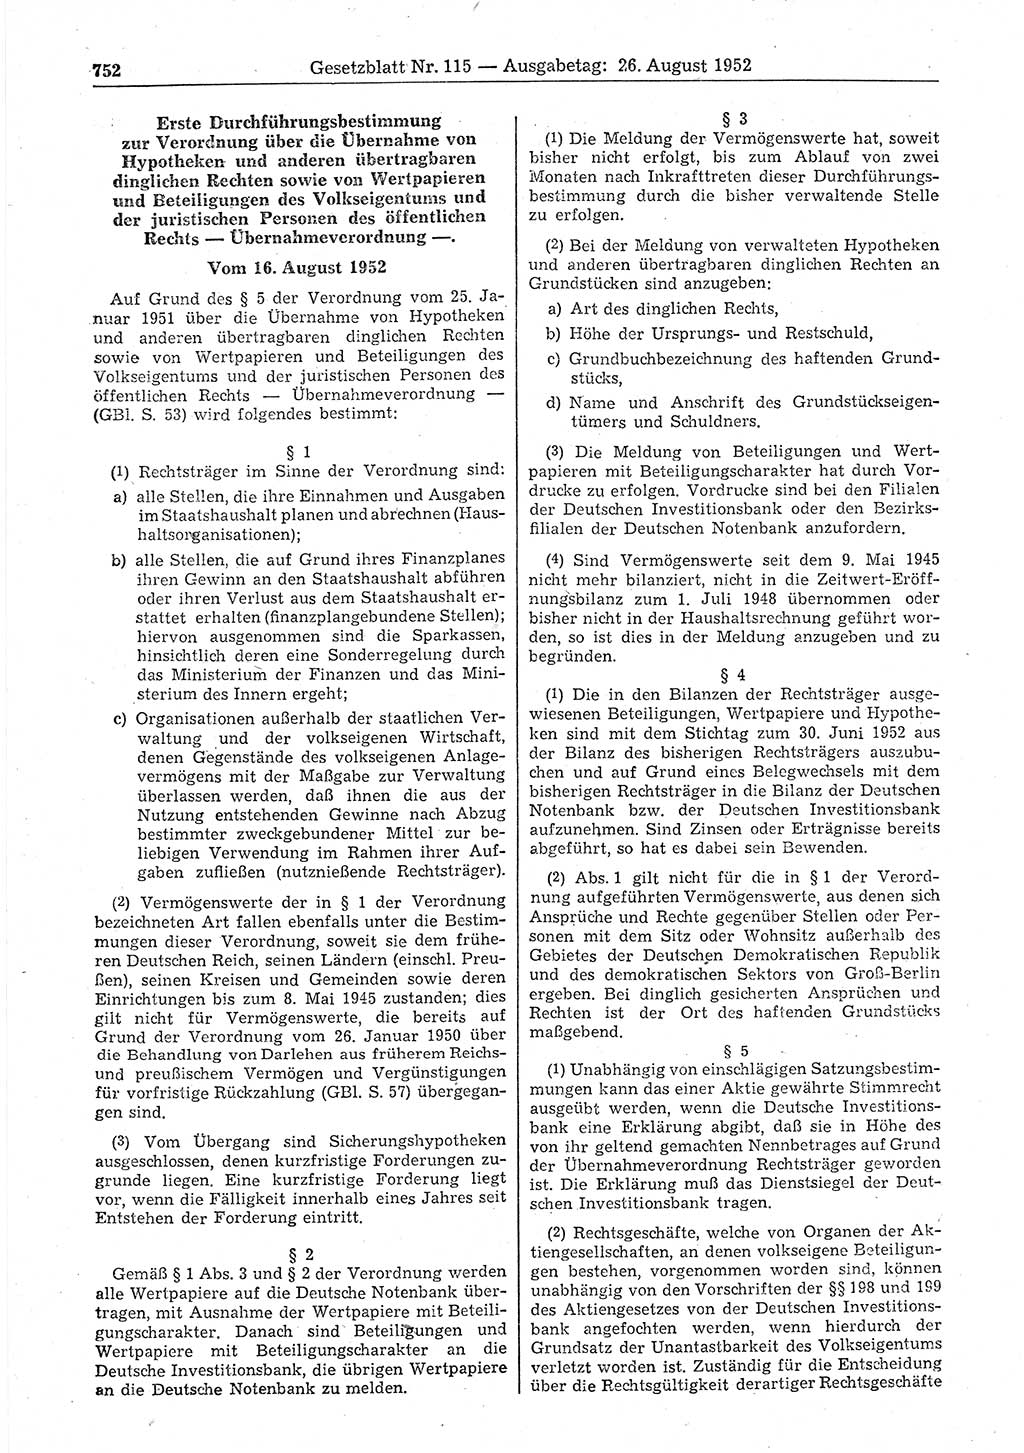 Gesetzblatt (GBl.) der Deutschen Demokratischen Republik (DDR) 1952, Seite 752 (GBl. DDR 1952, S. 752)